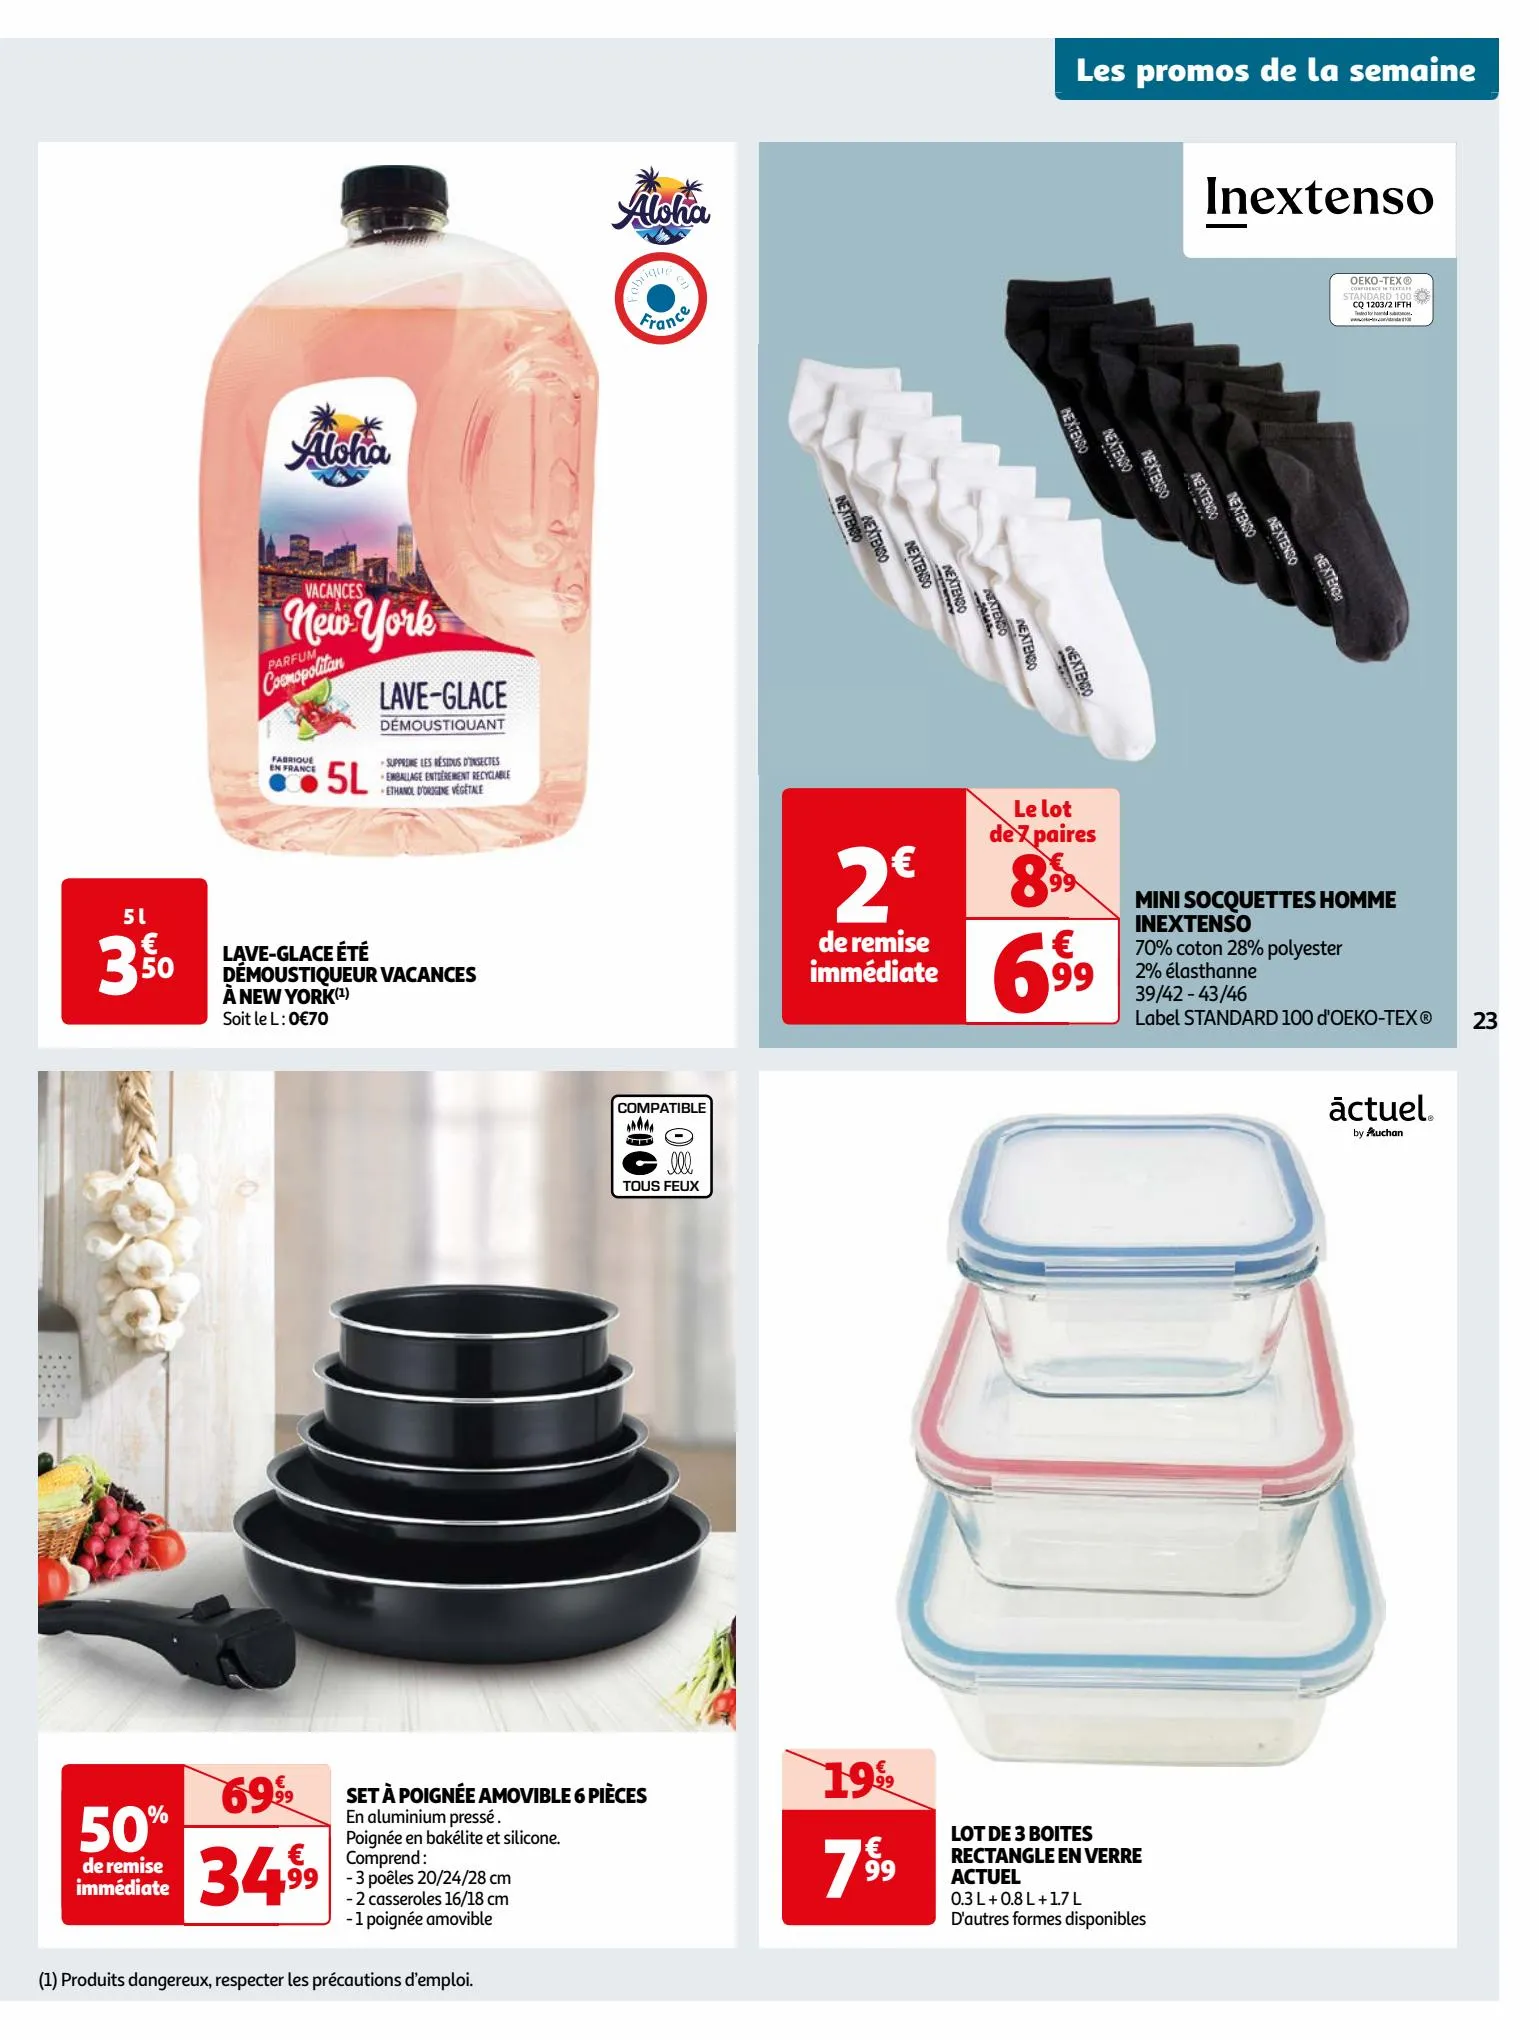 Catalogue Format XXL à prix XXS dans votre supermarché, page 00023